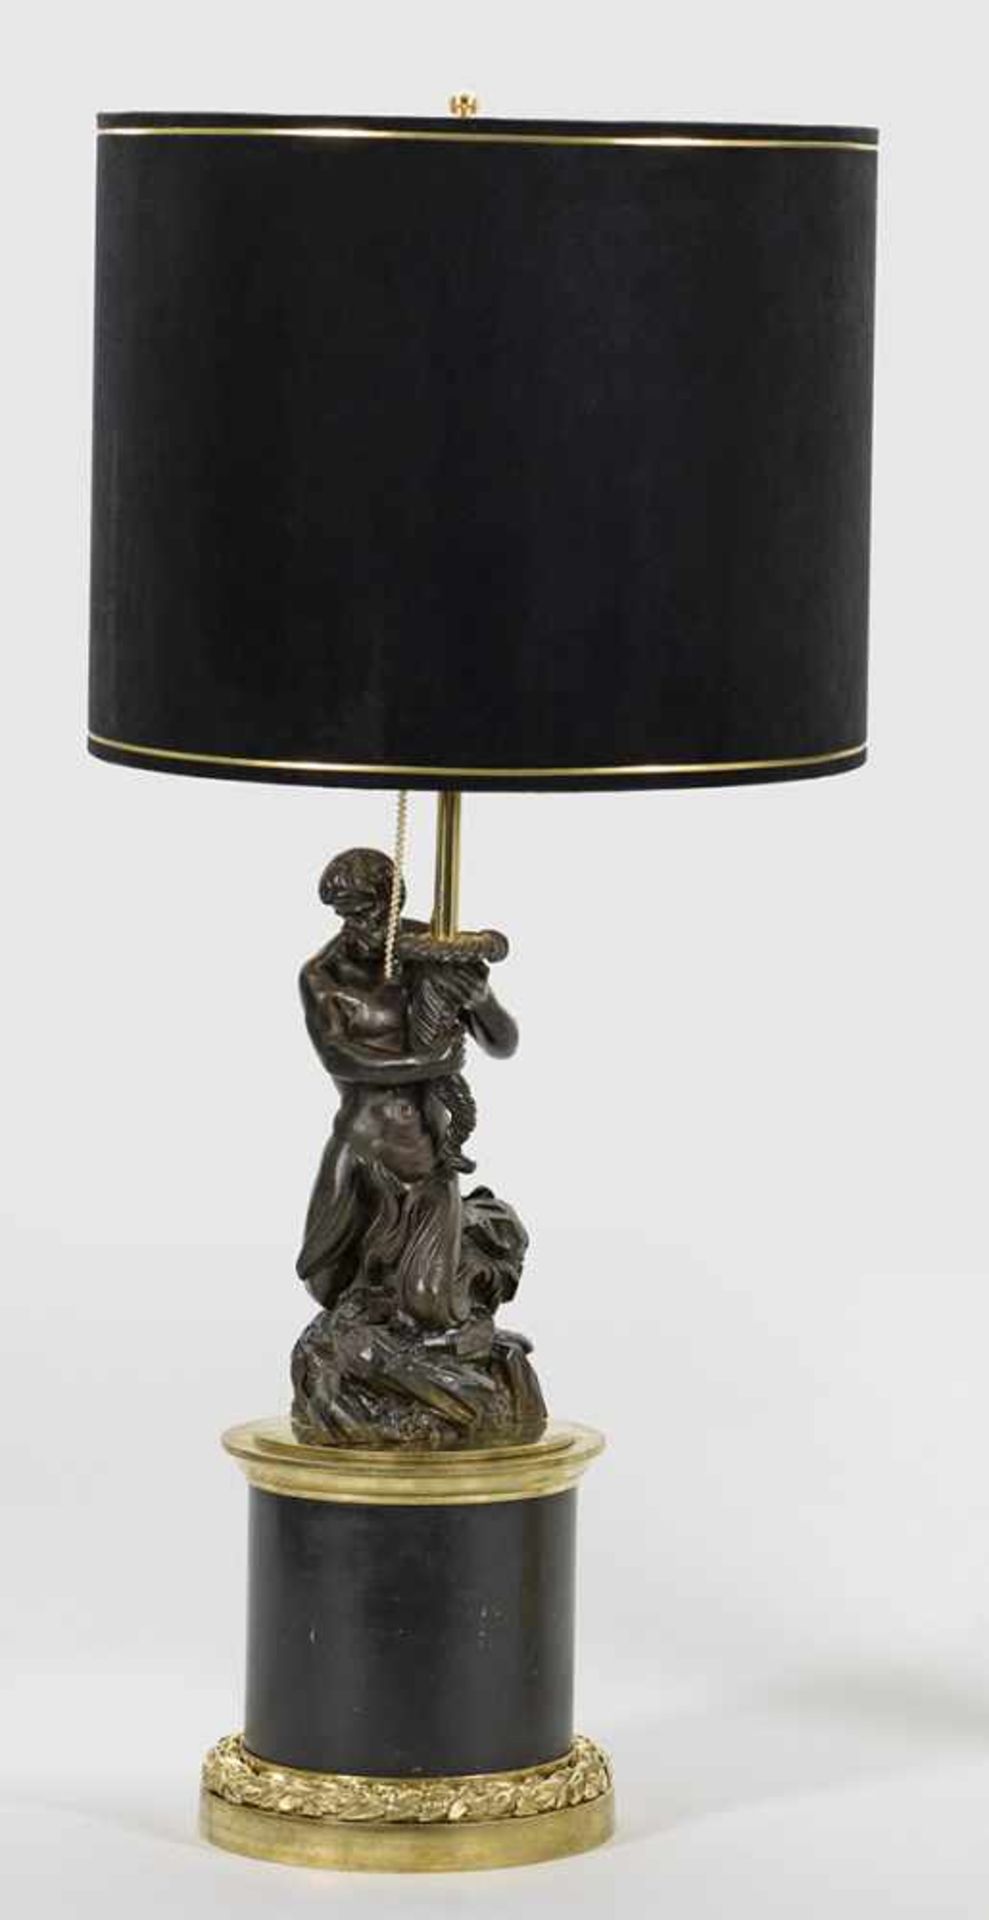 Große repräsentative Napoleon III-Skulpturenlampe2-flg.; Bronze, vergoldet bzw. dunkel patiniert.